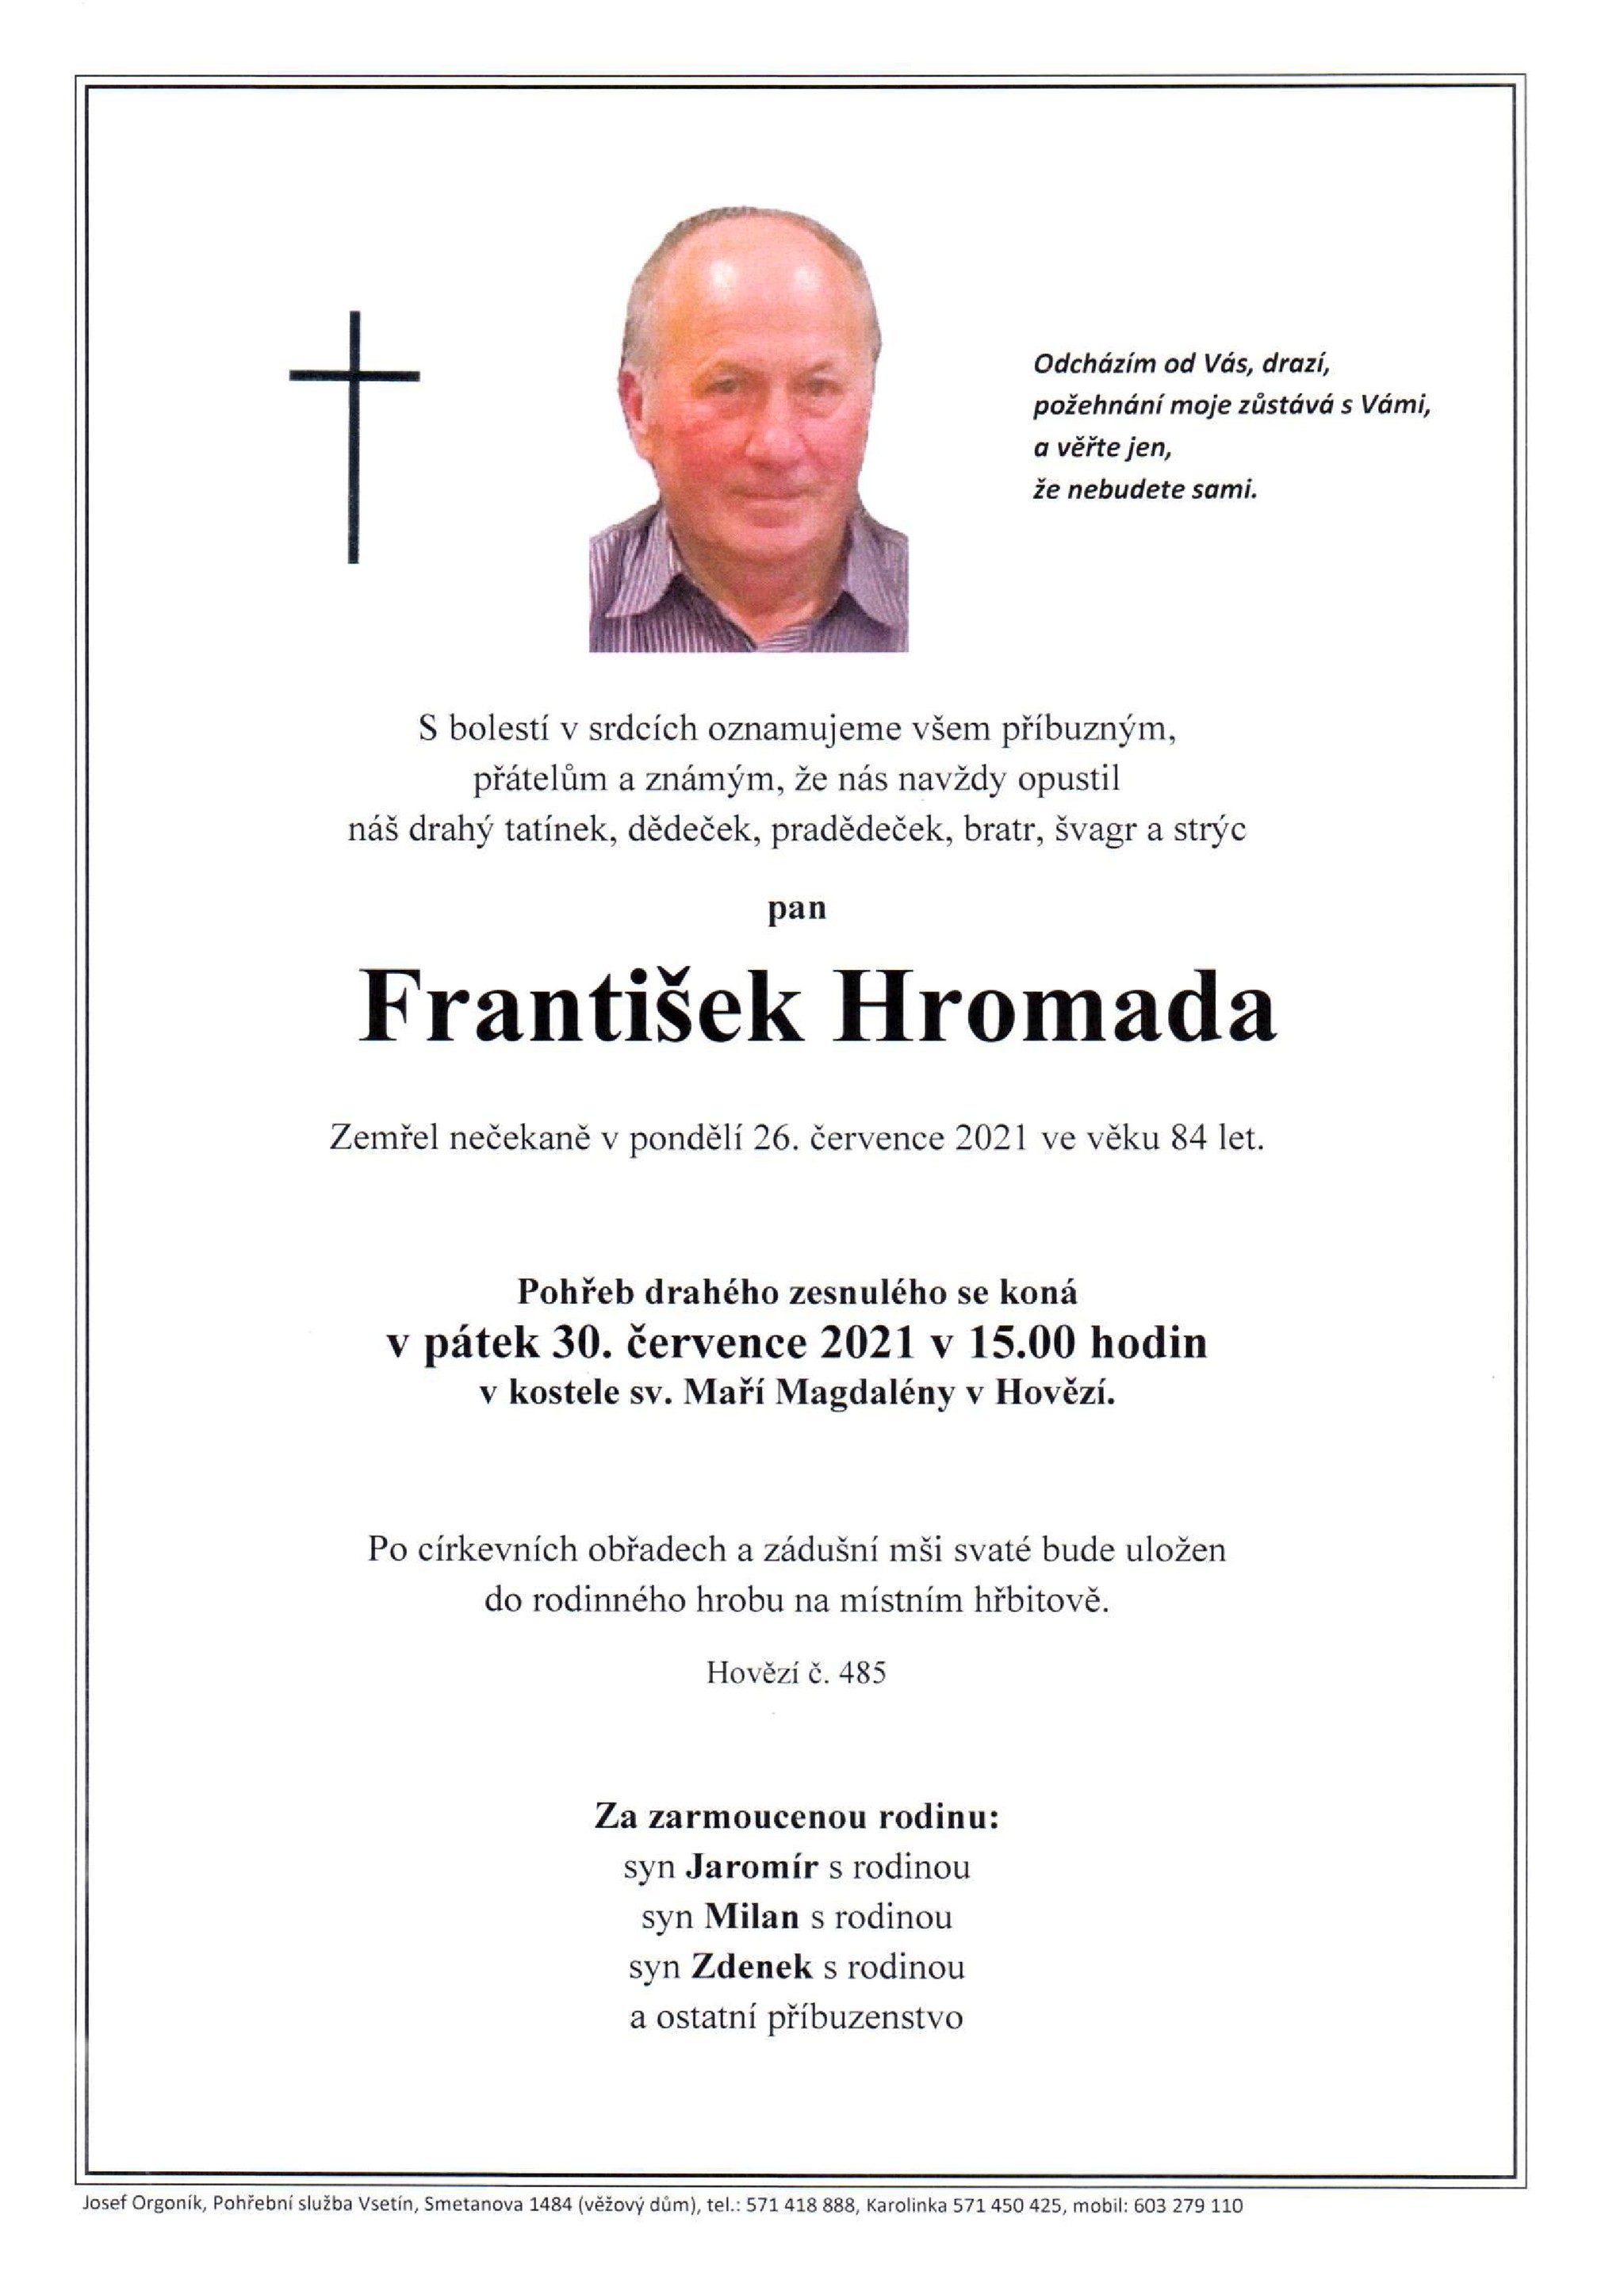 František Hromada